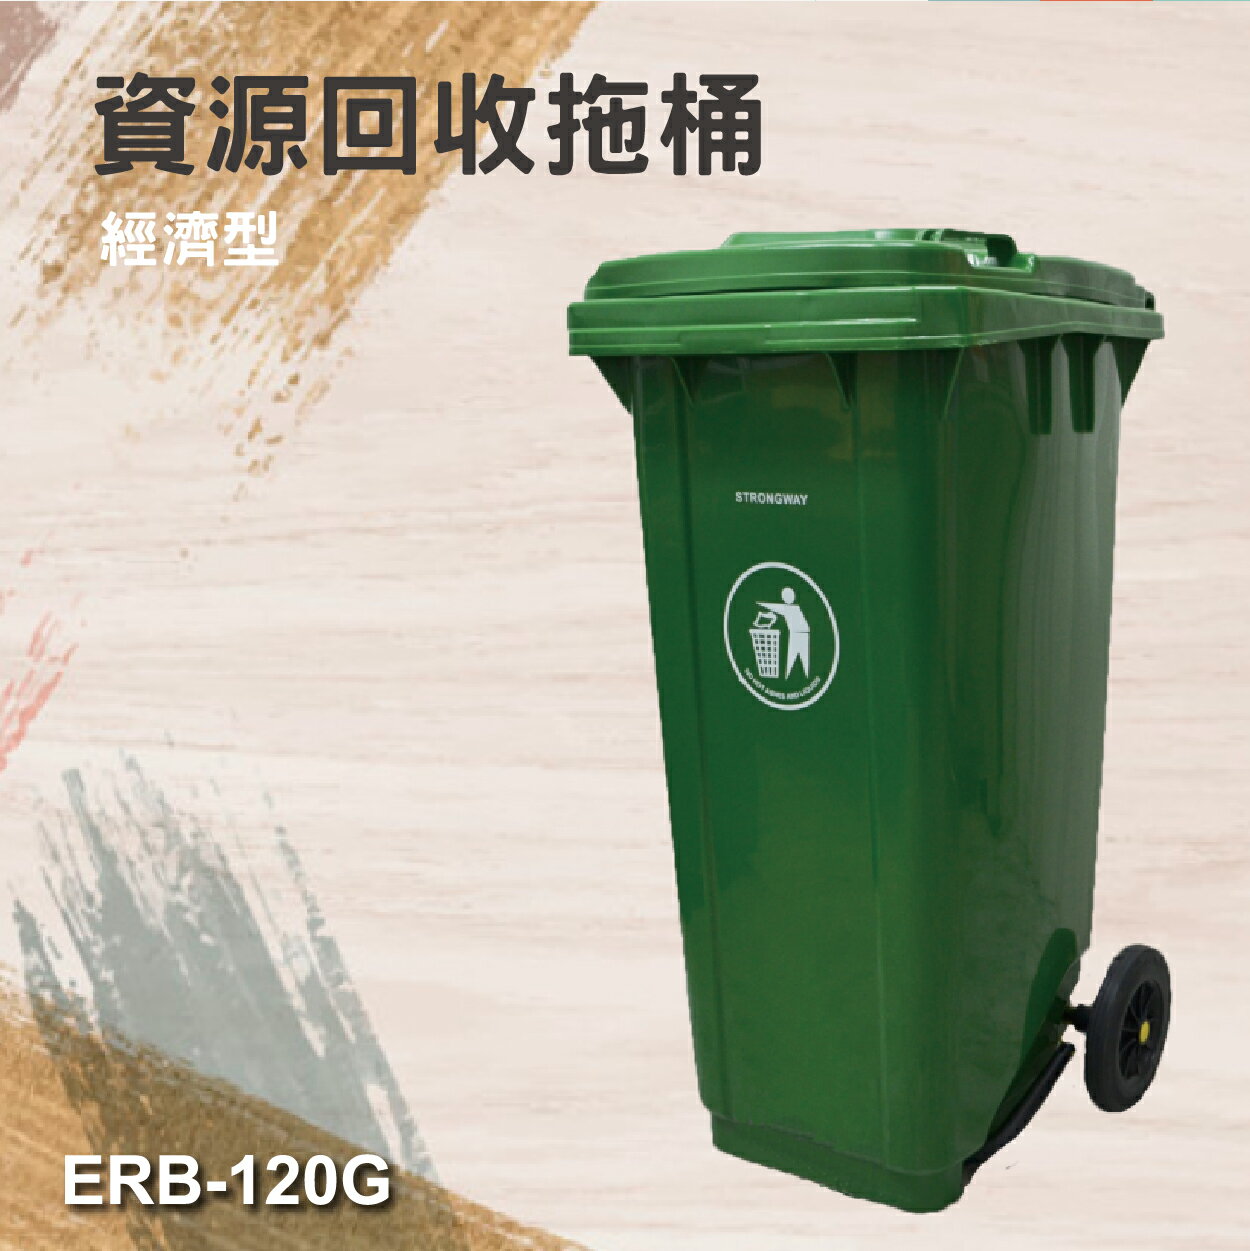 歐洲認證 垃圾拖桶 ERB-120G(經濟型)120公升 資源回收拖桶 防滑耐磨輪 高載重 社區學校垃圾桶